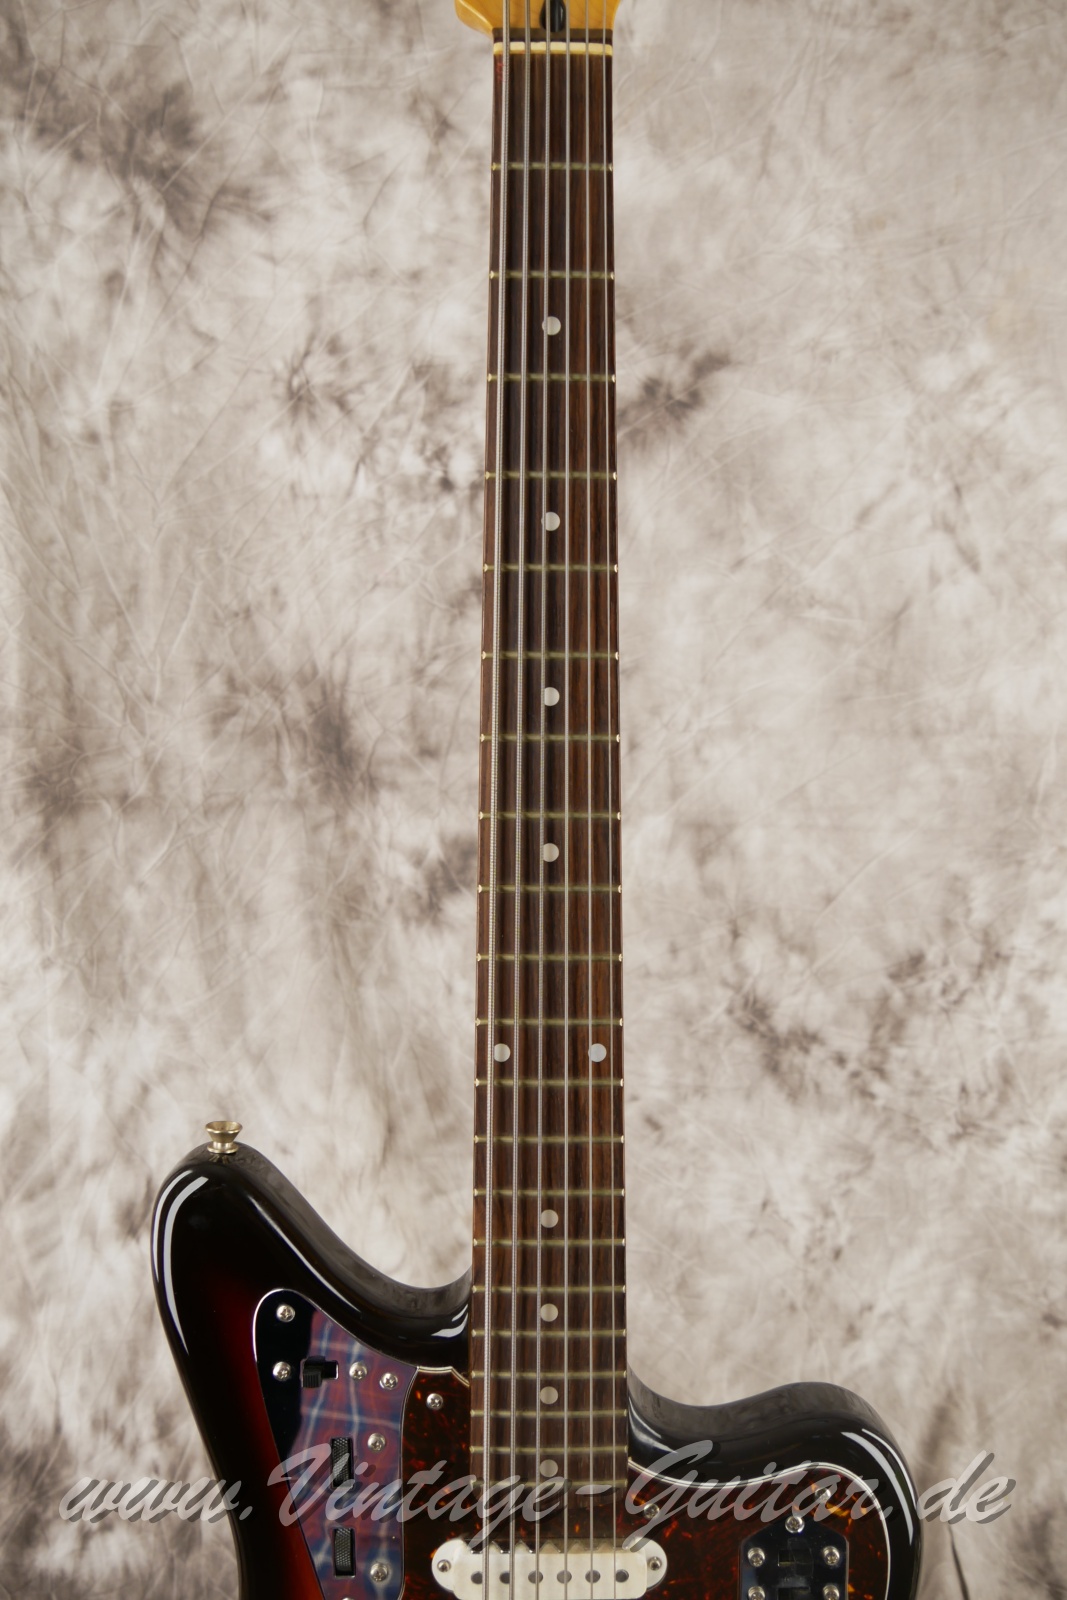 Fender_Jaguar_Baritone_Custom_Japan_sunburst_1993-005.JPG